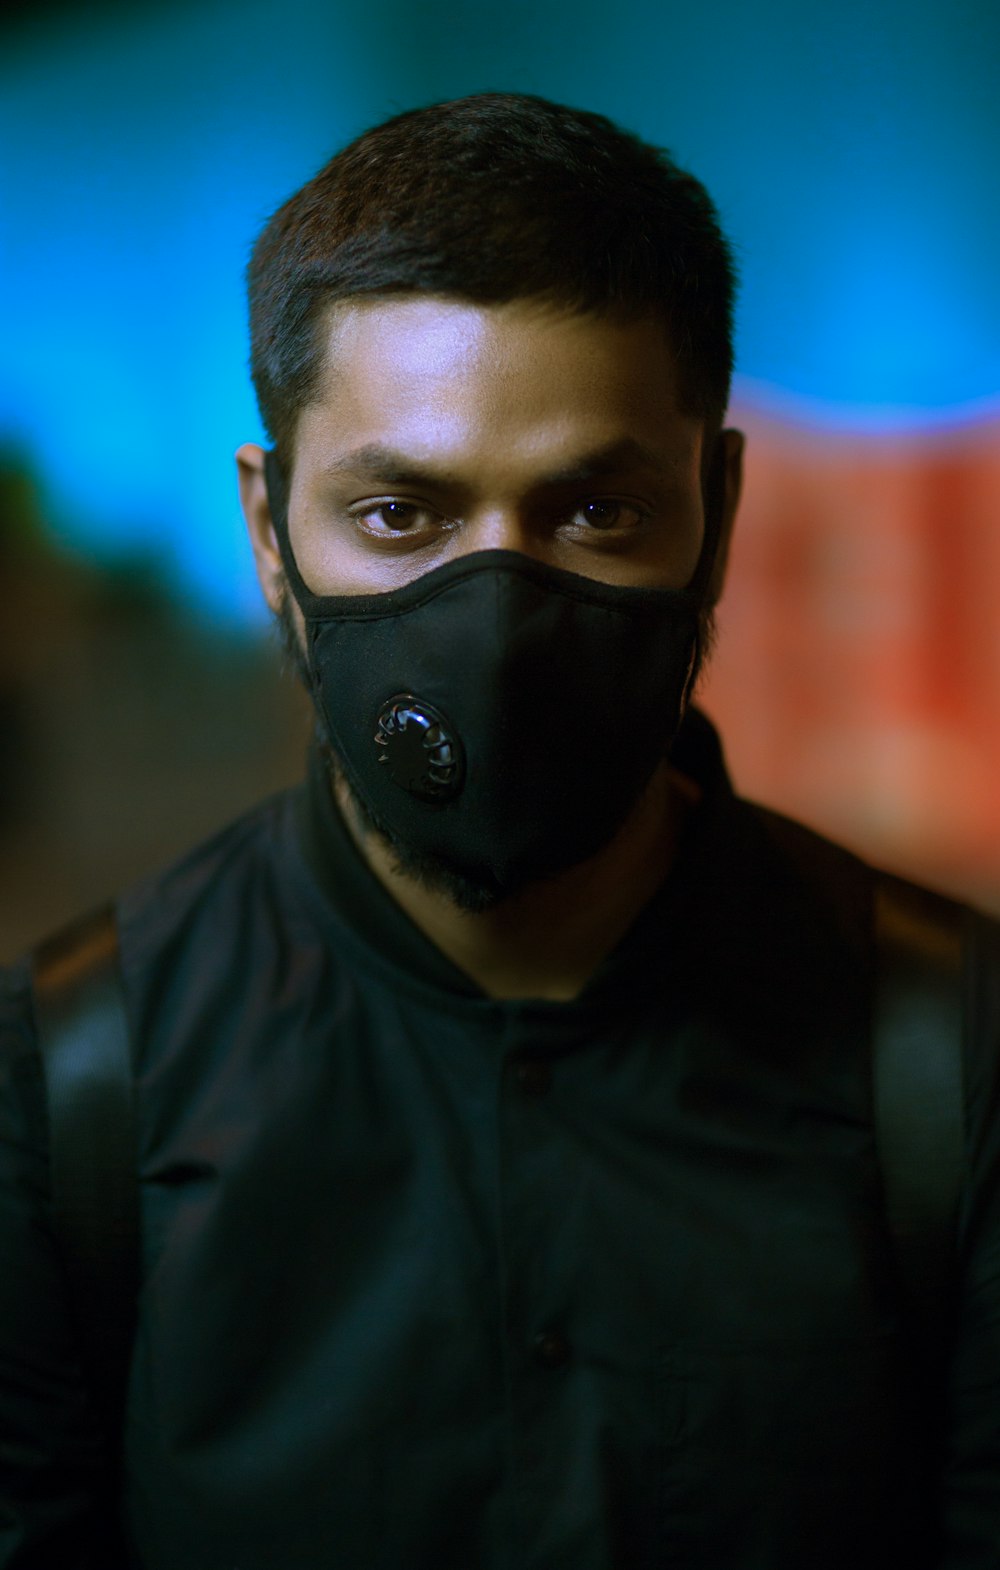 Man wearing black mask photo – Free India Image on Unsplash